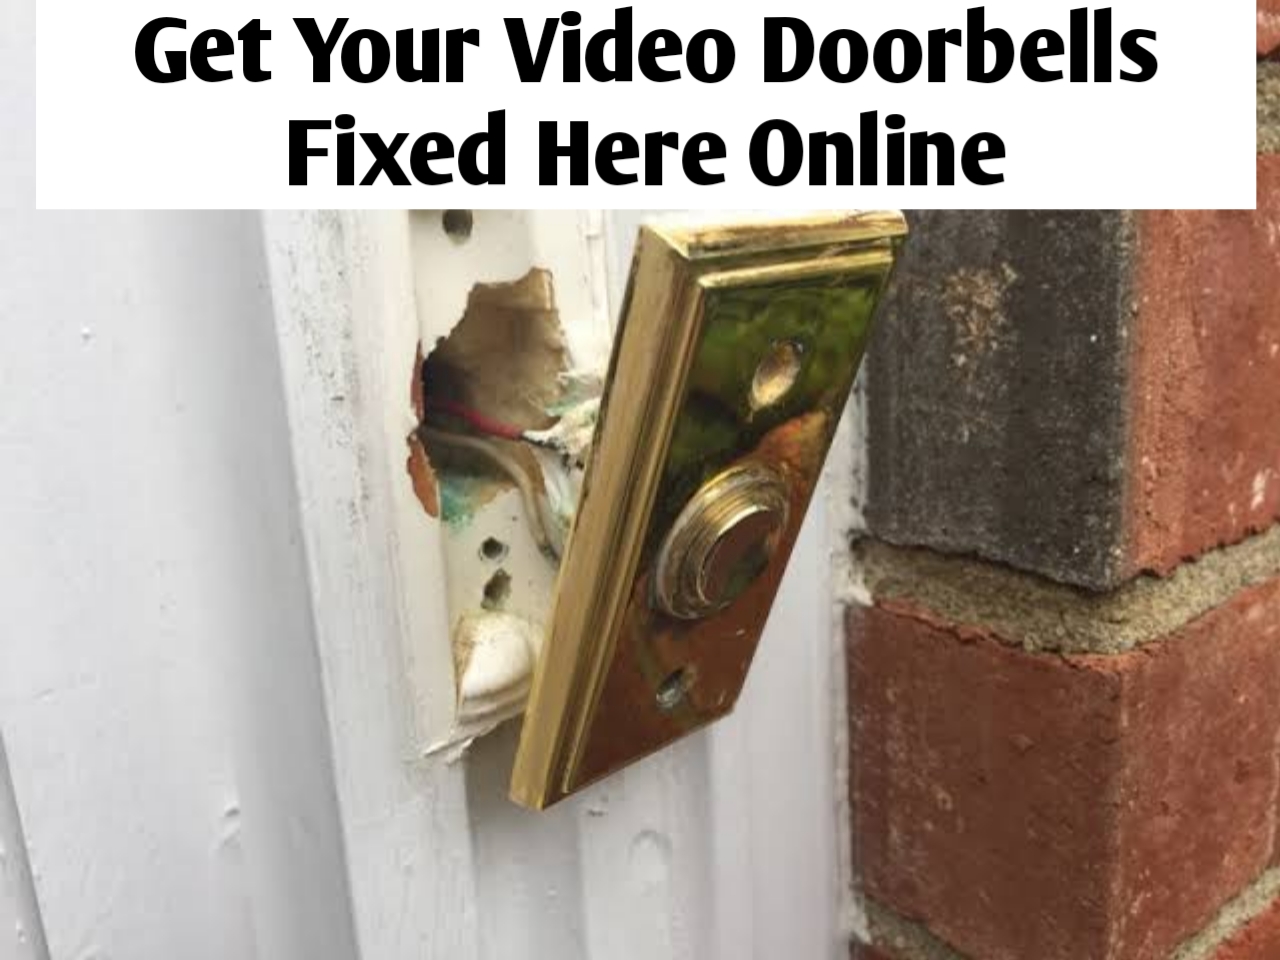 who fixes video doorbells